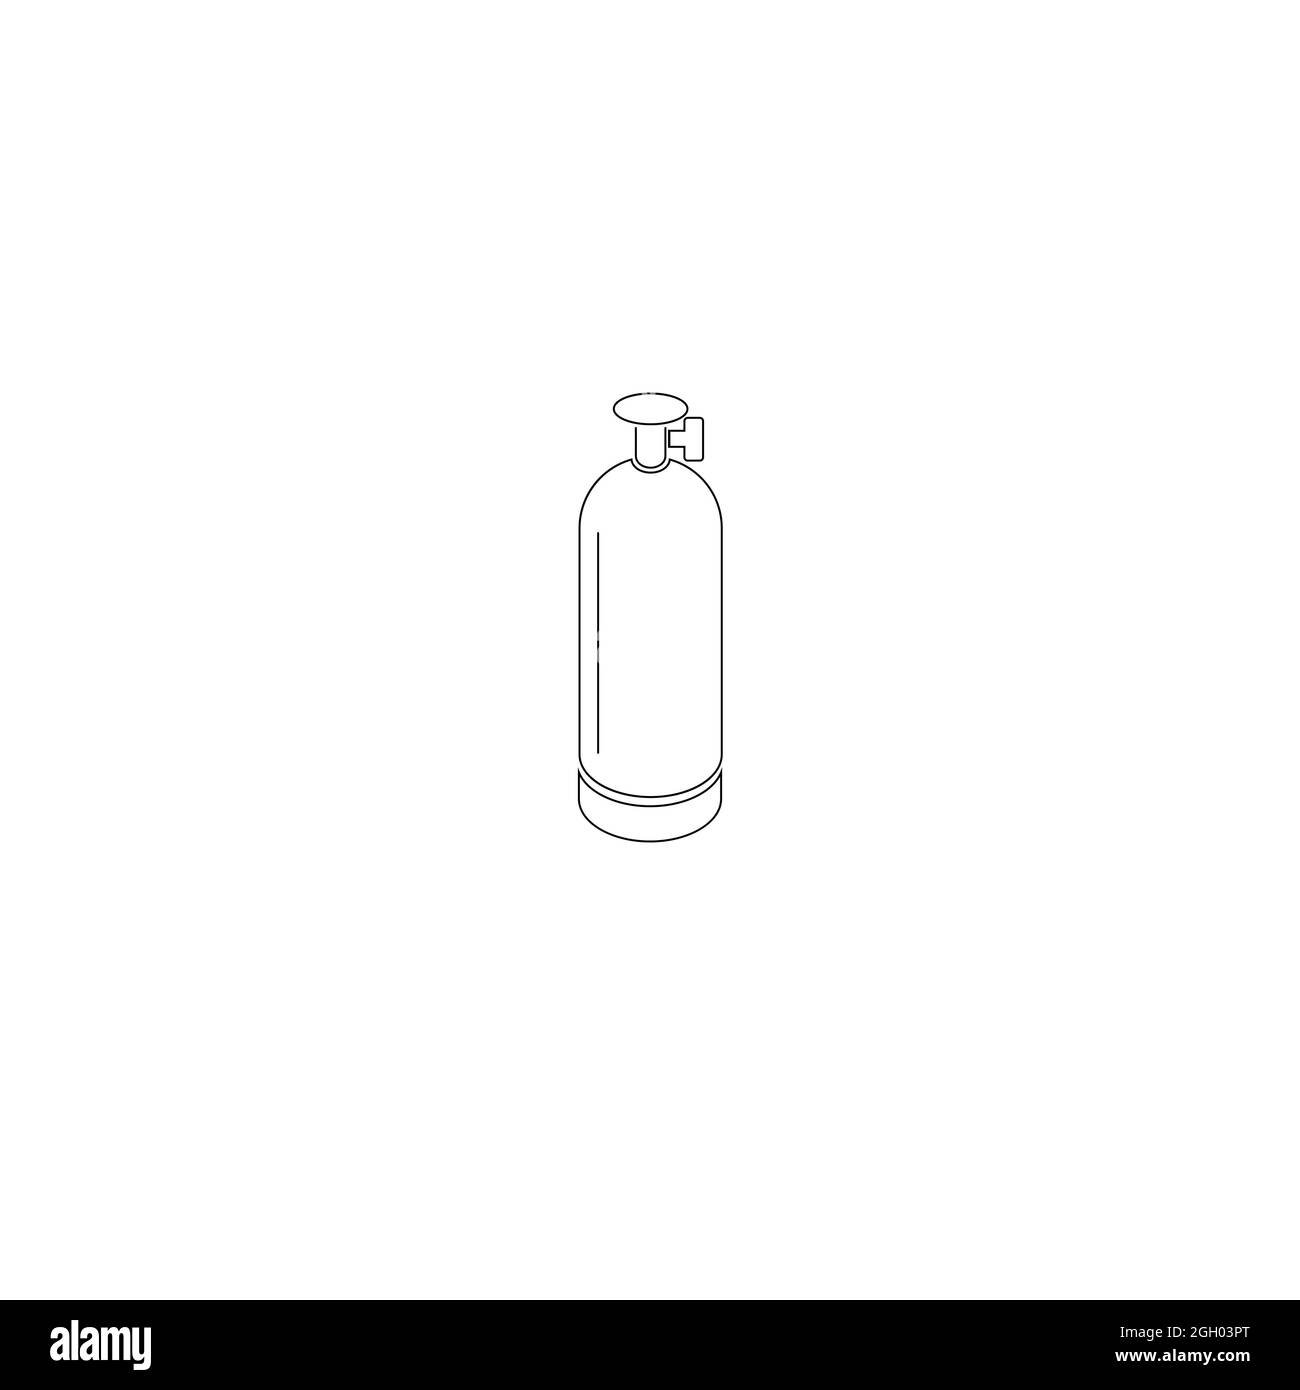 Sauerstoffflasche Schwarzweiß-Stockfotos und -bilder - Alamy